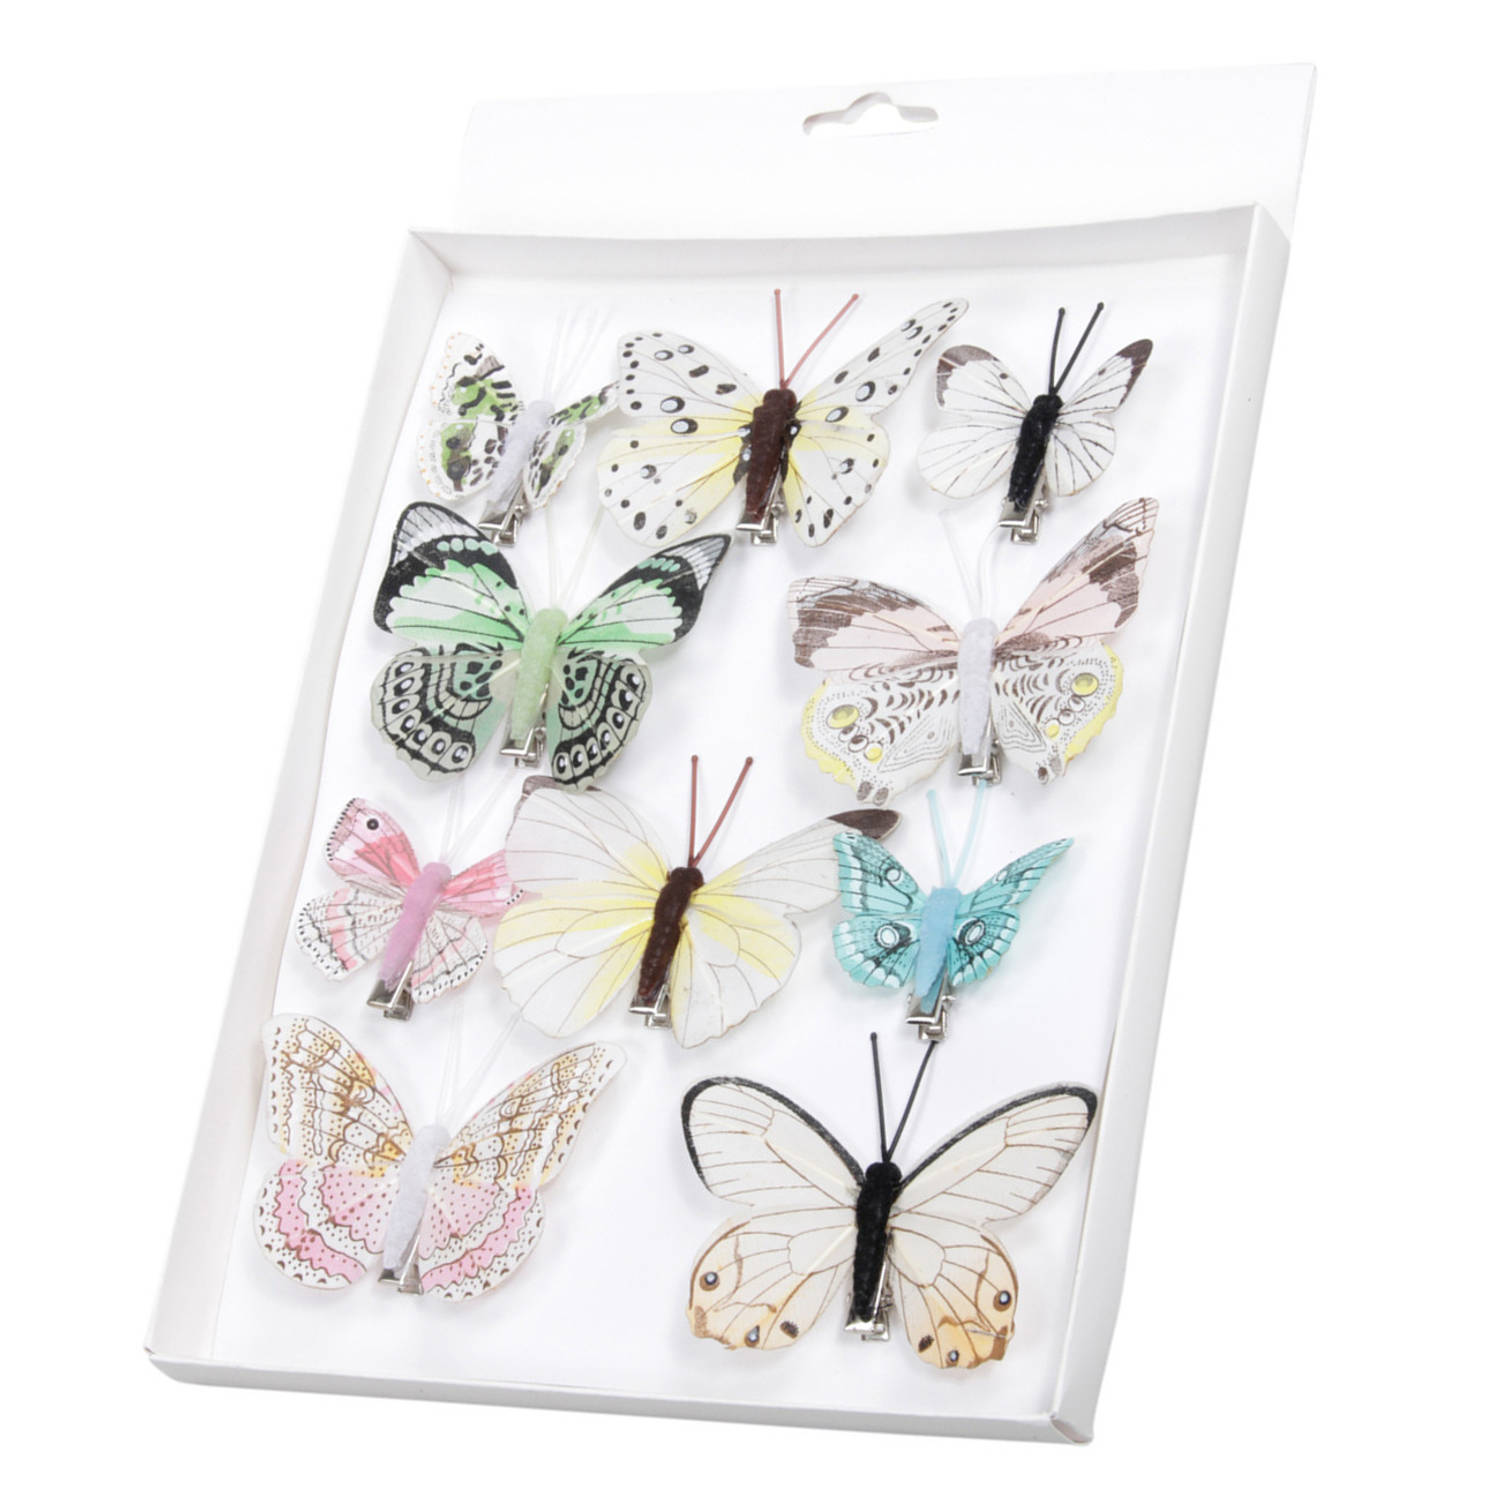 10x stuks decoratie vlinders op clip gekleurd 5 tot 8 cm - vlindertjes versiering - Kerstboomversiering